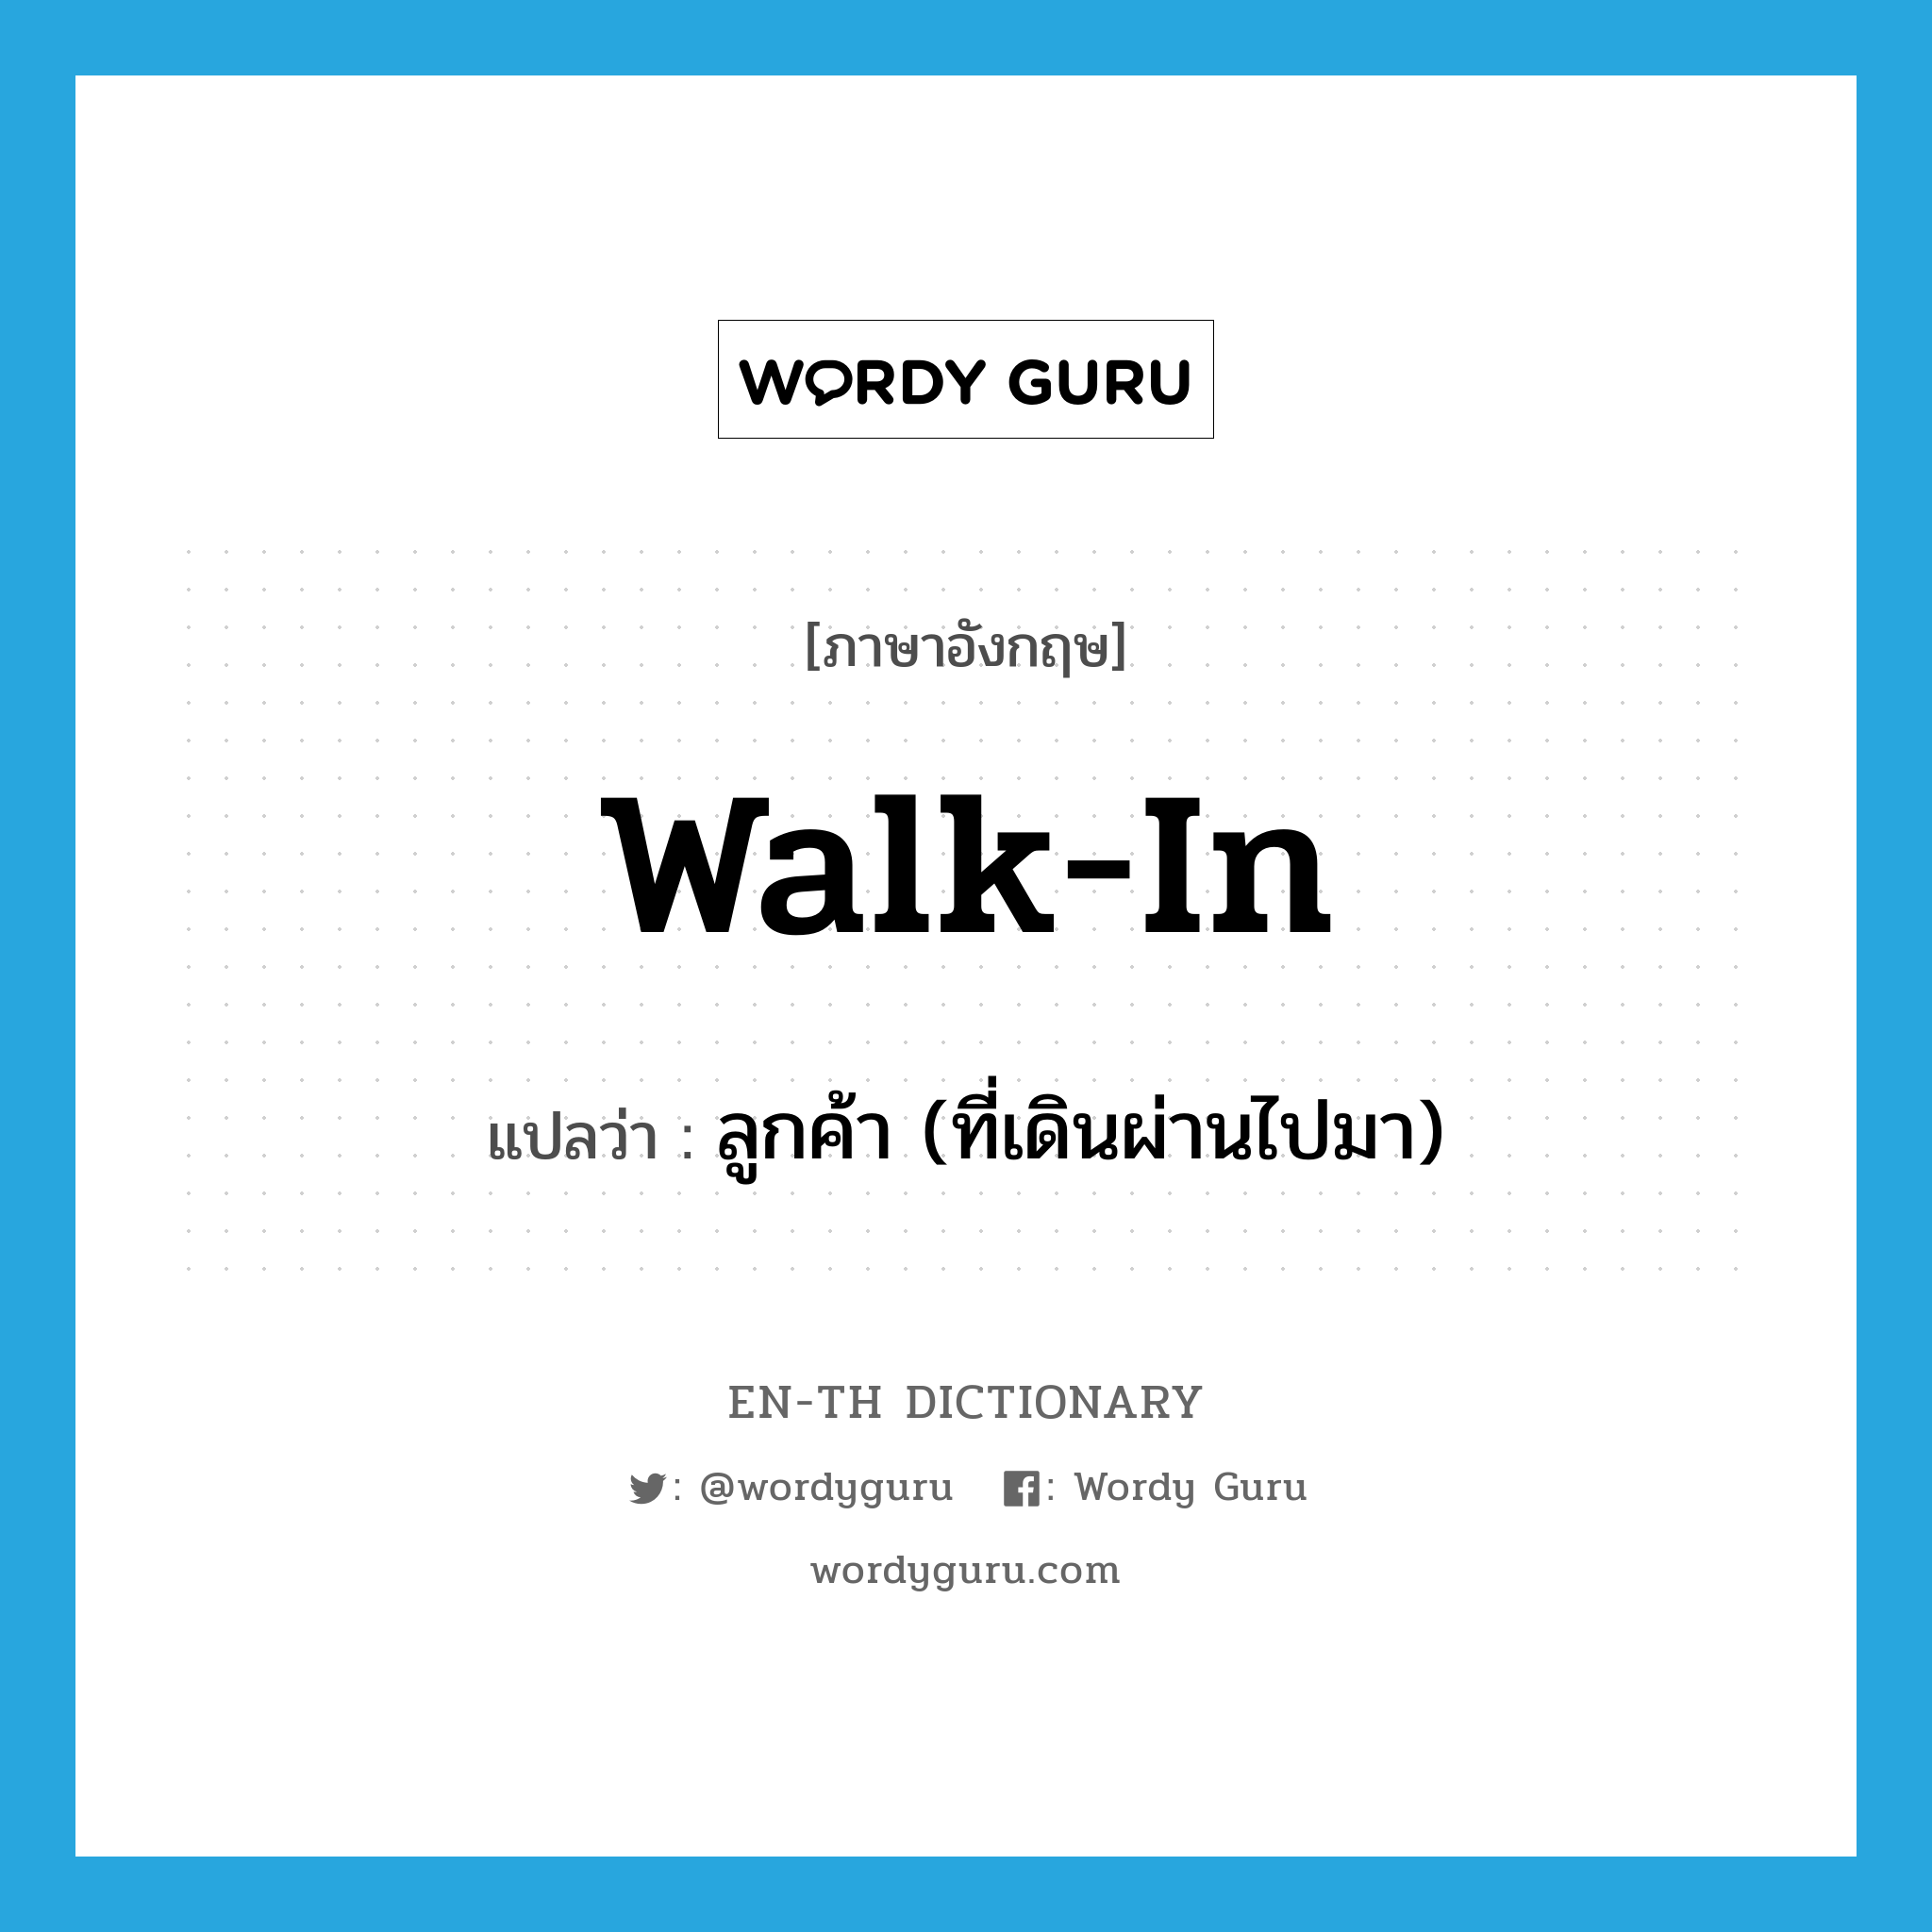 ลูกค้า (ที่เดินผ่านไปมา) ภาษาอังกฤษ?, คำศัพท์ภาษาอังกฤษ ลูกค้า (ที่เดินผ่านไปมา) แปลว่า walk-in ประเภท SL หมวด SL